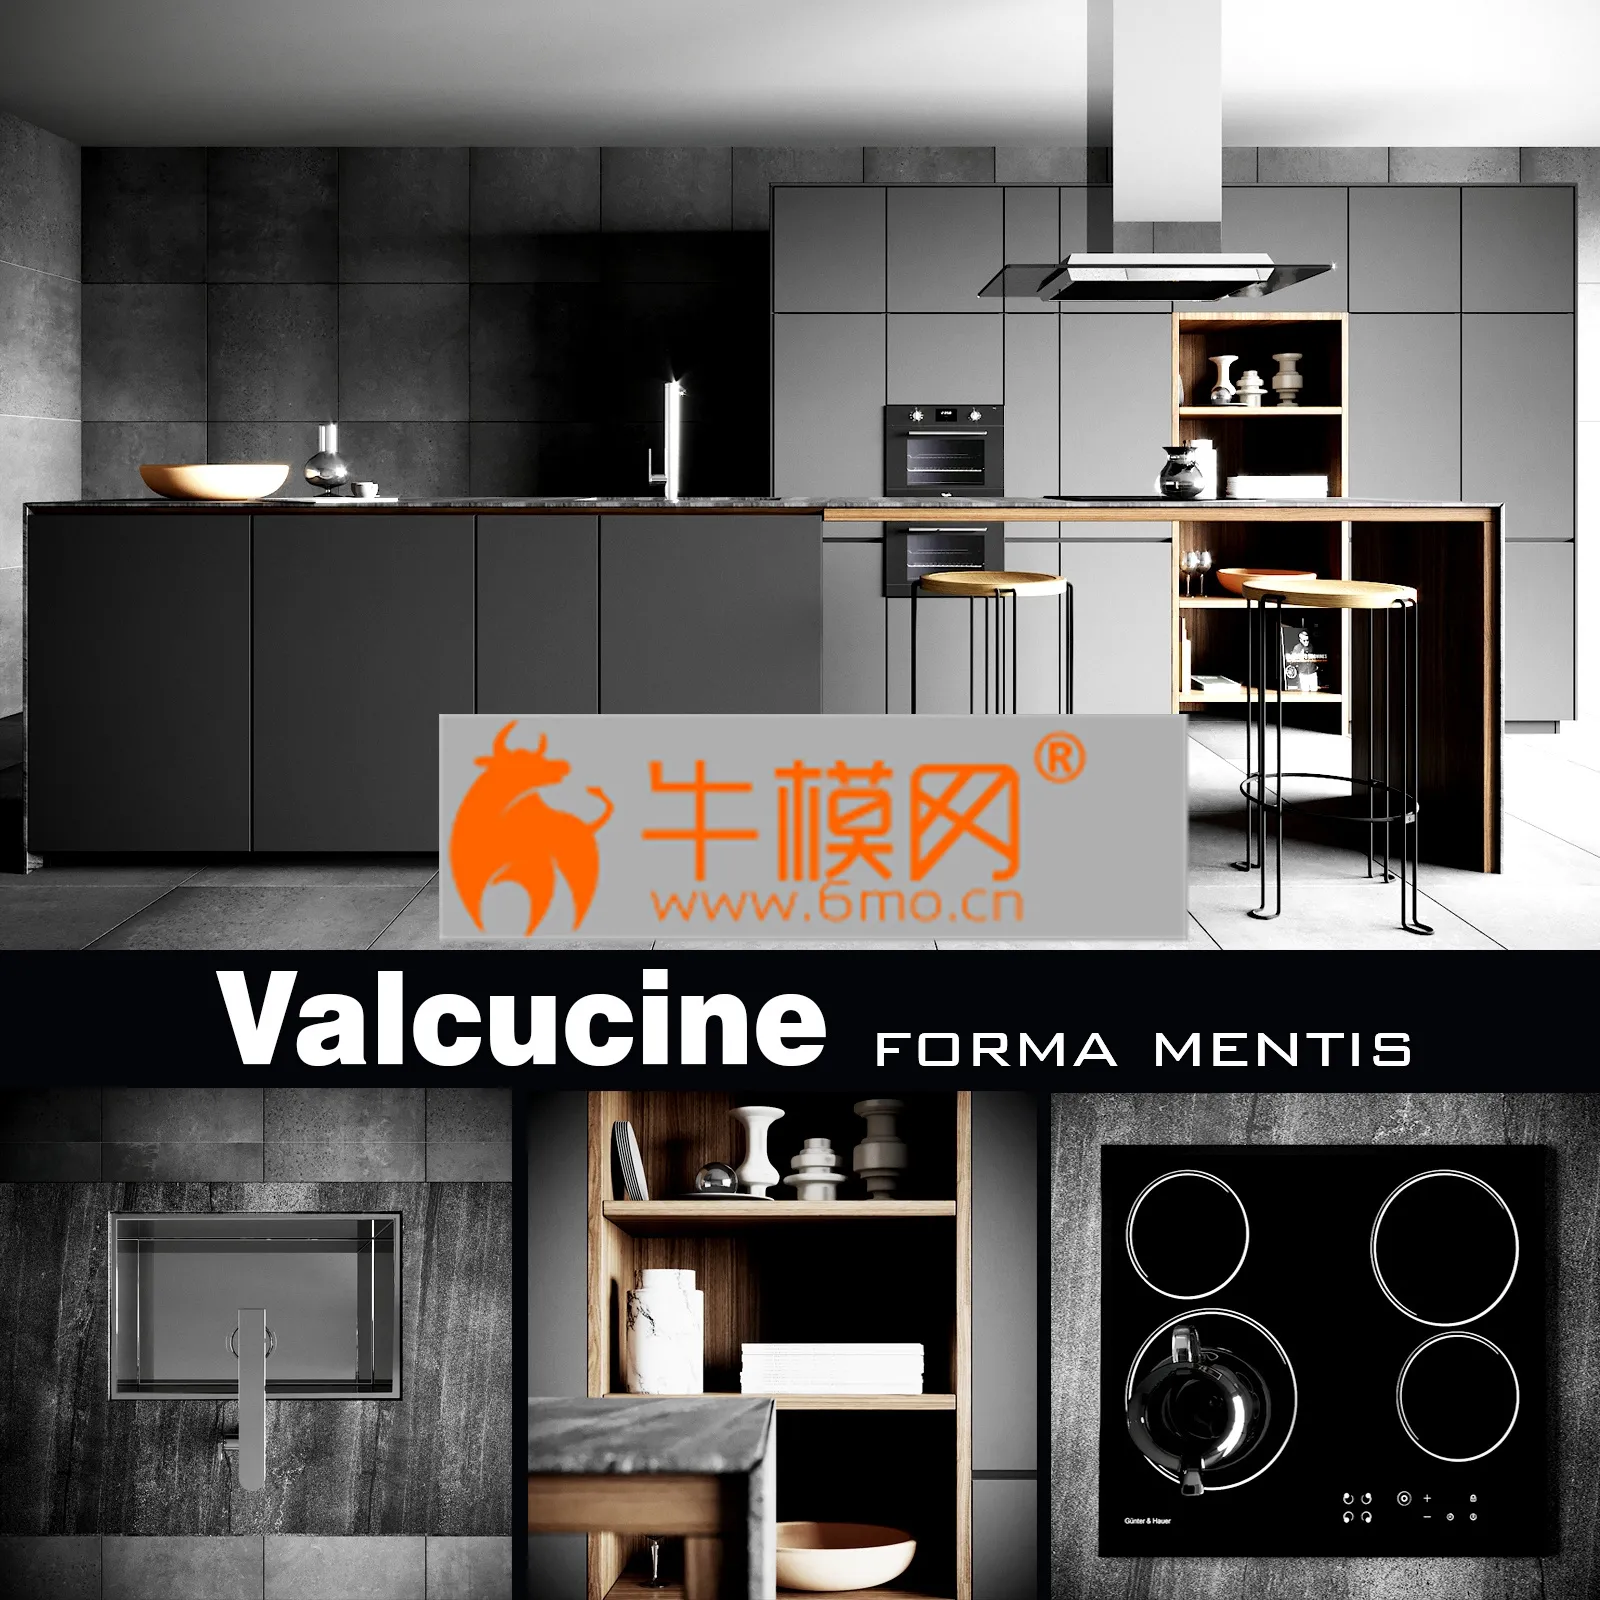 KITCHEN D-COR – Valcucine Forma Mentis Dark Kitchen